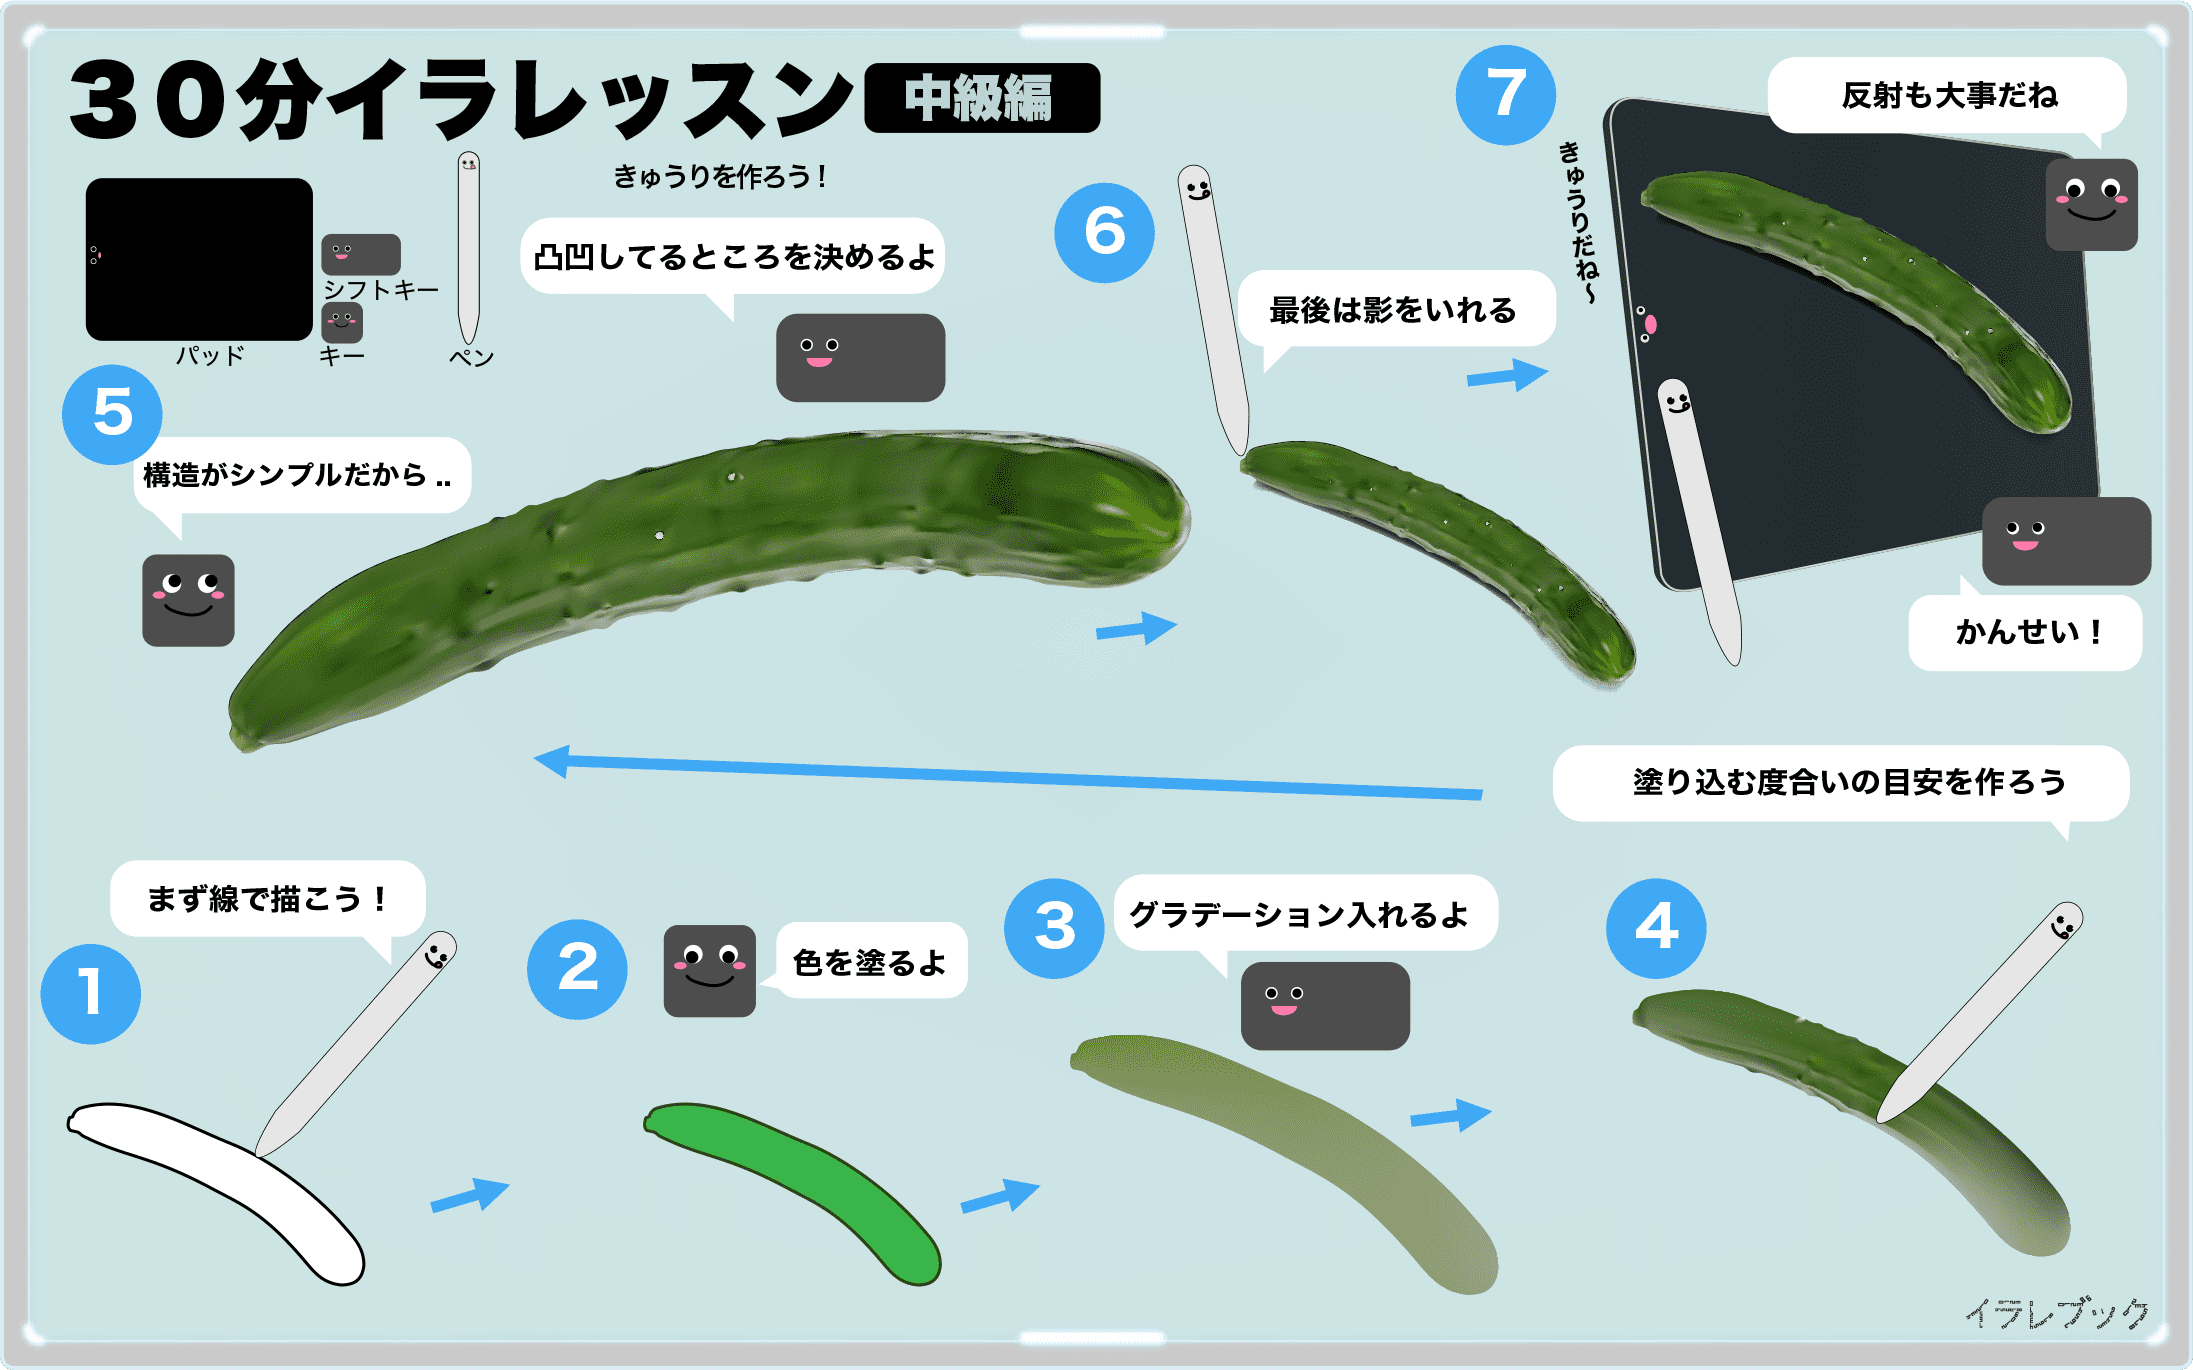 きゅうり むくみ解消 脂肪を分解 キレイになれるおススメの食べ方は Cucumber